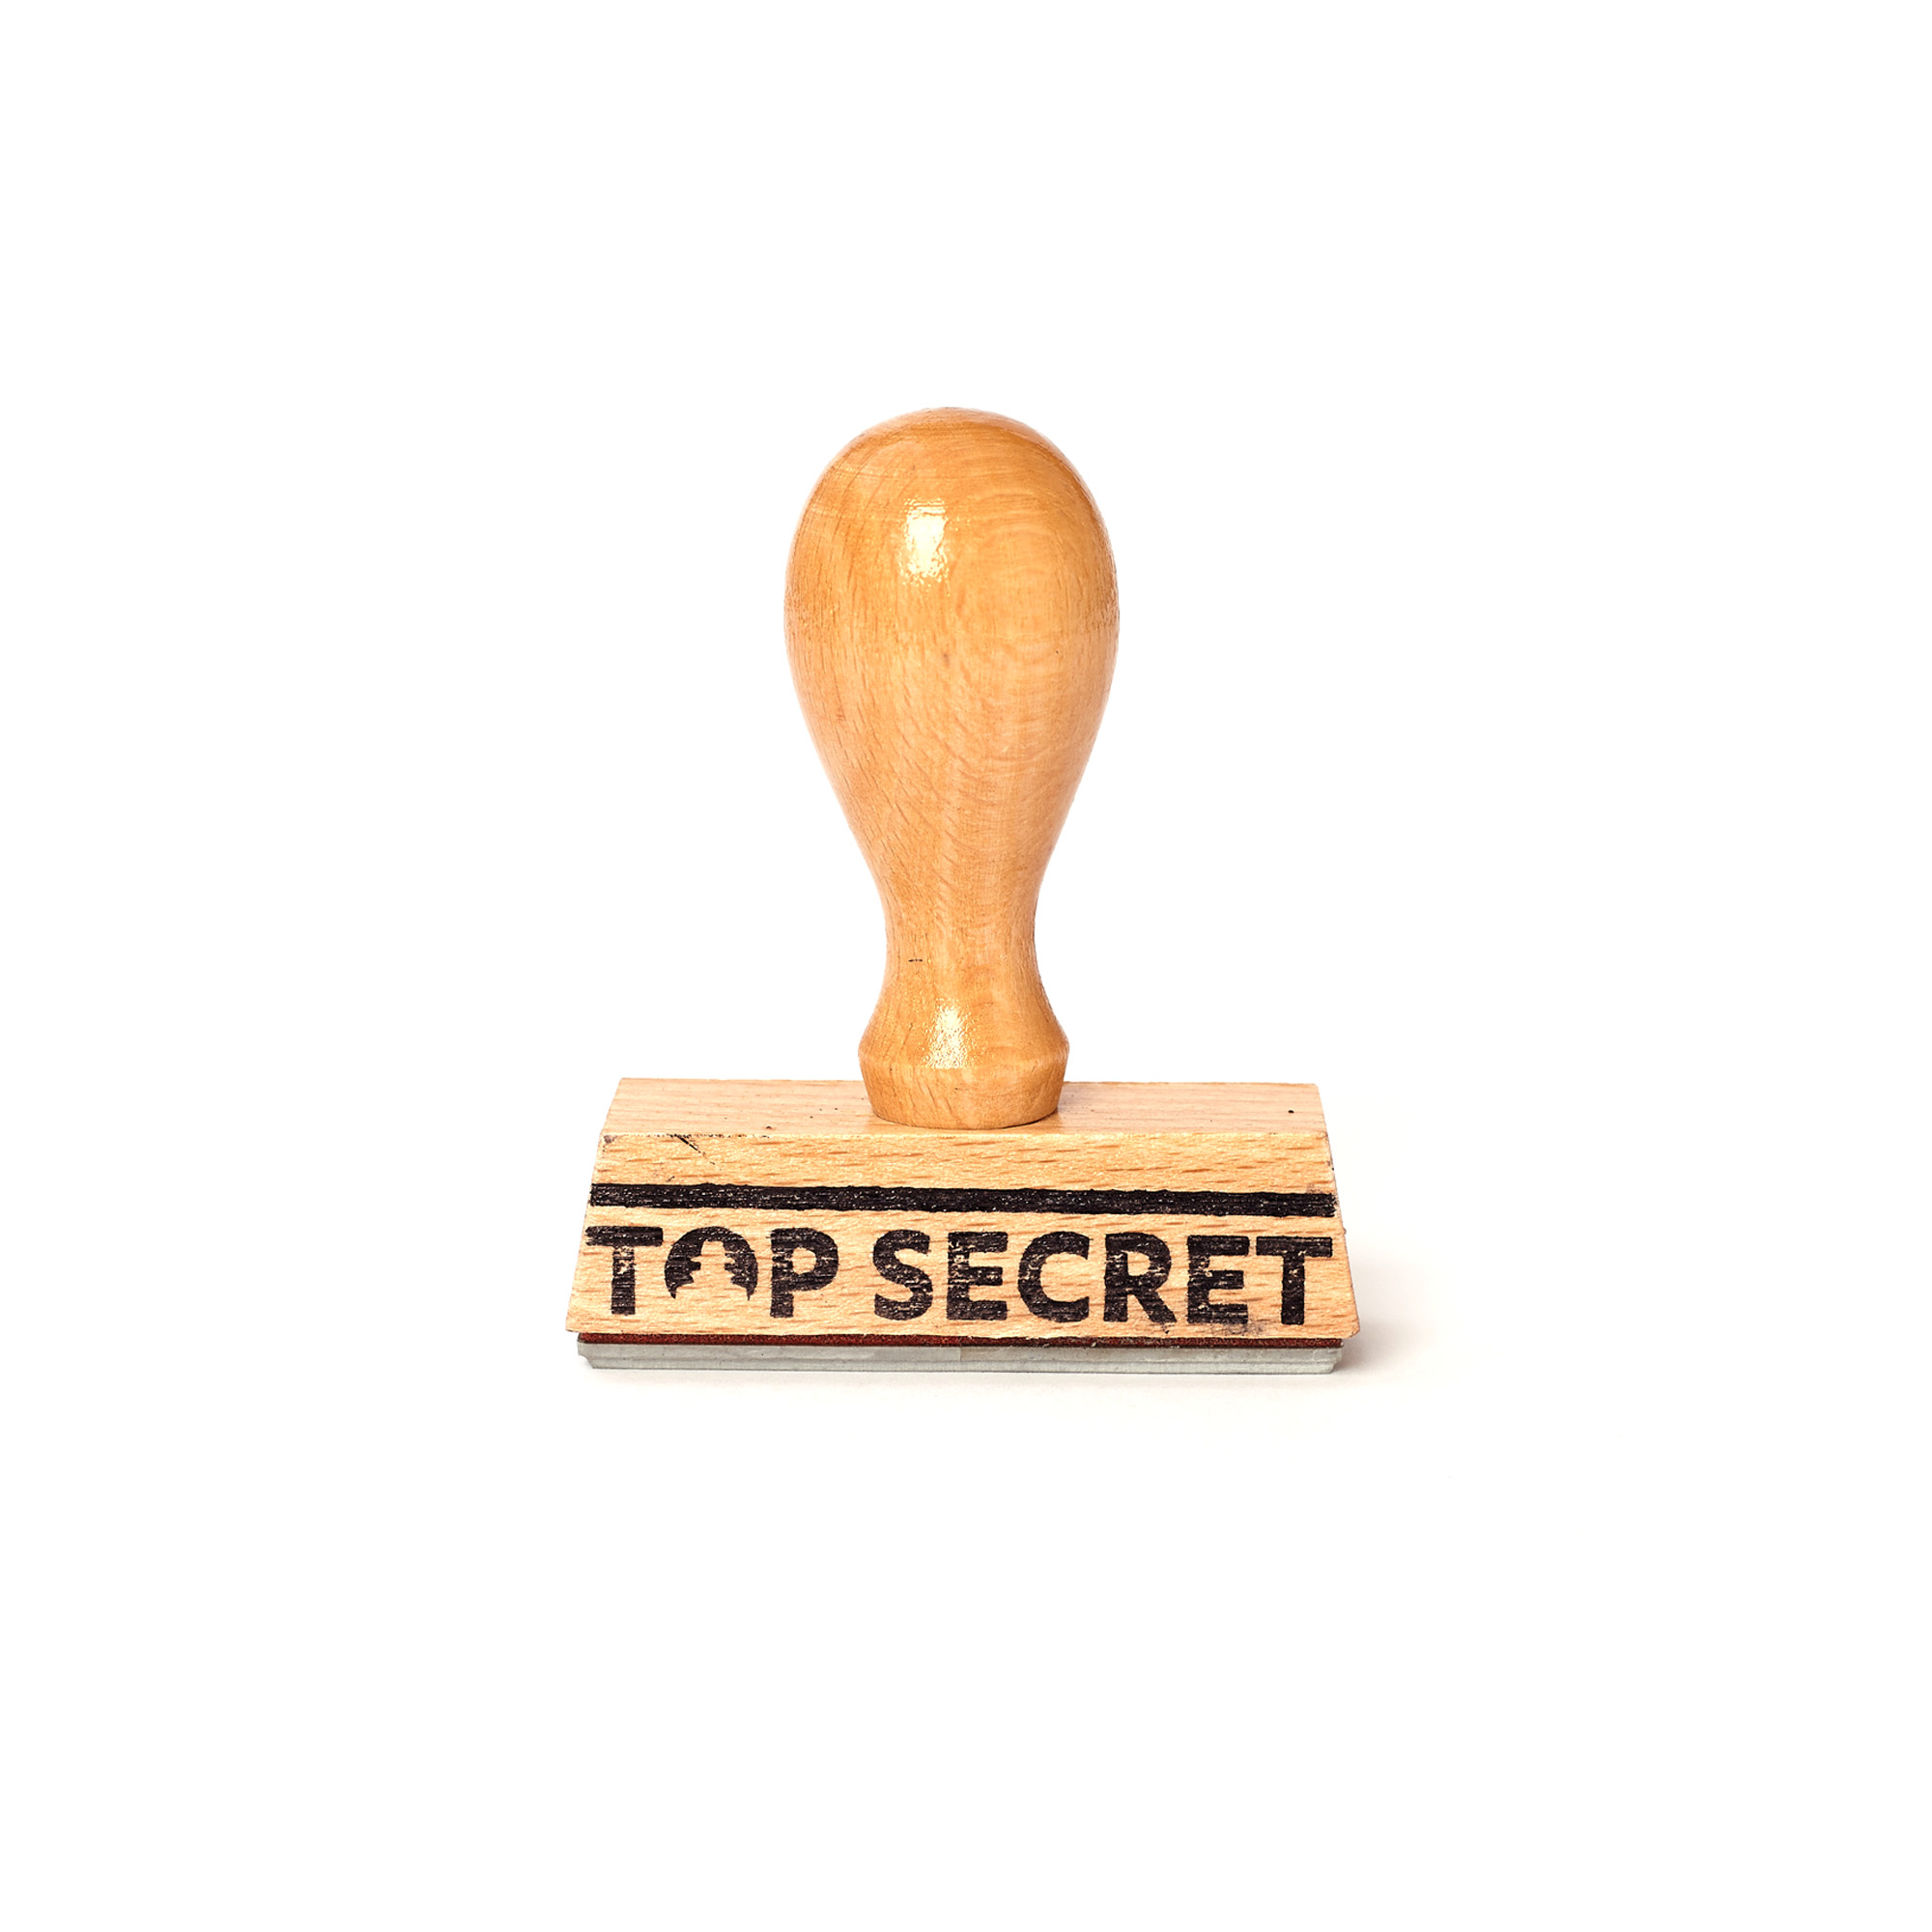 Rubber stamp "Top secret"